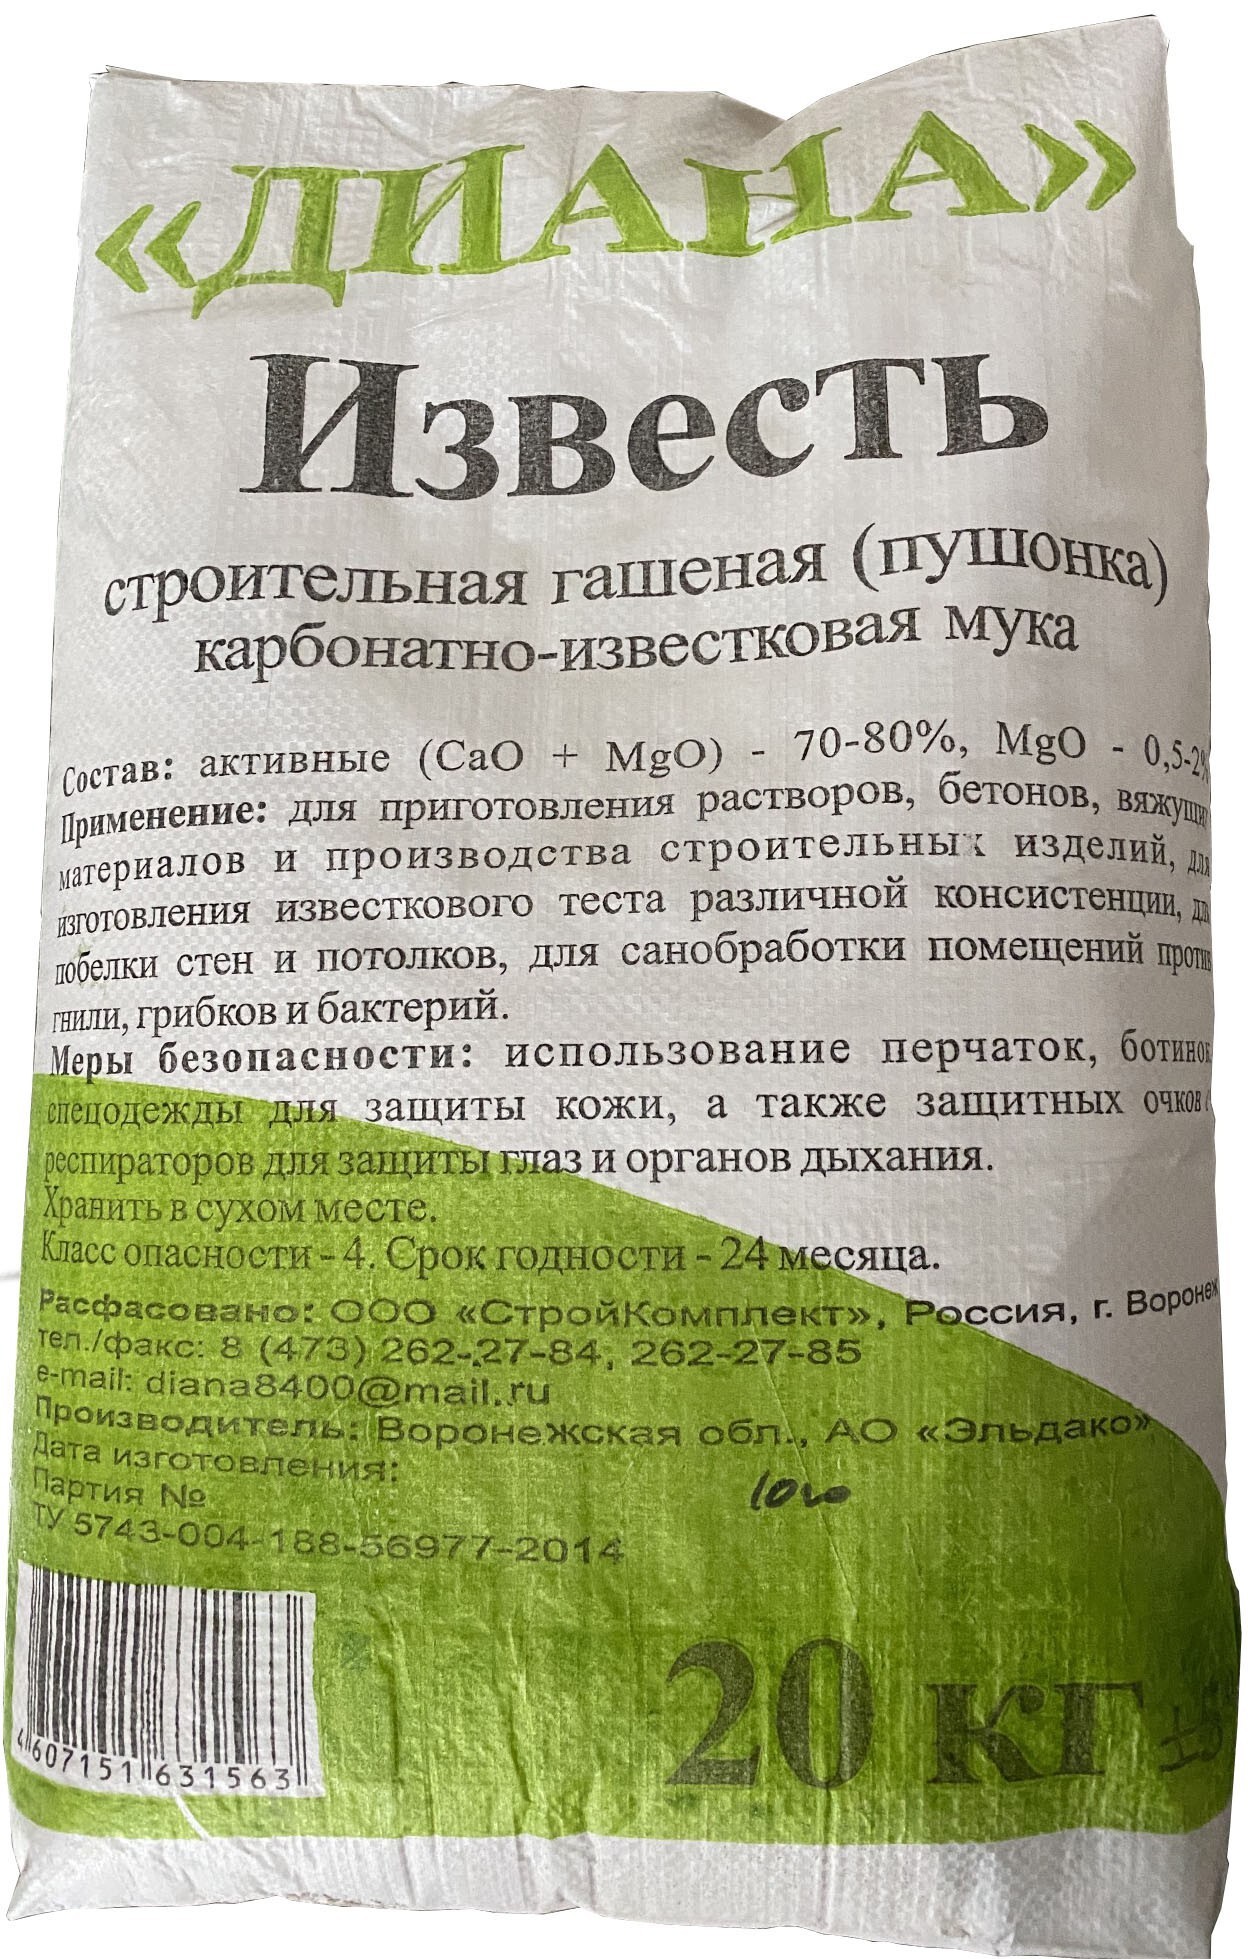 Известь строительная пушонка КИМ 20 кг по цене 407 ₽/шт. купить в Москве в  интернет-магазине Леруа Мерлен